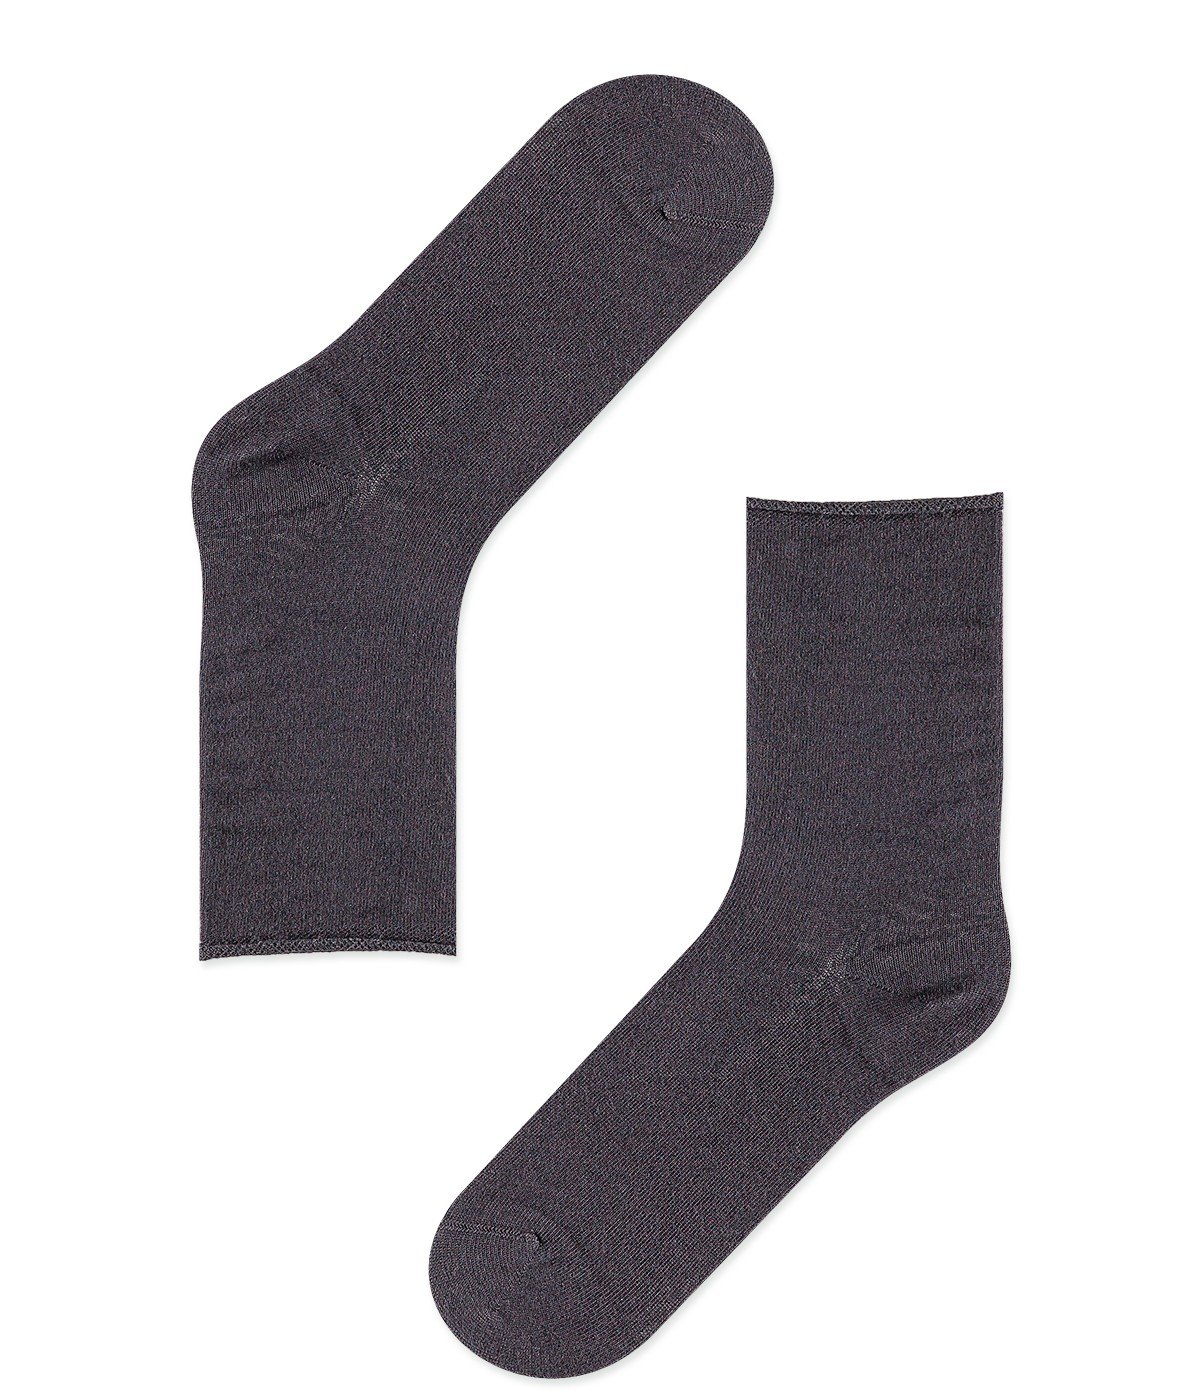 Soft Socks - 2 in 1